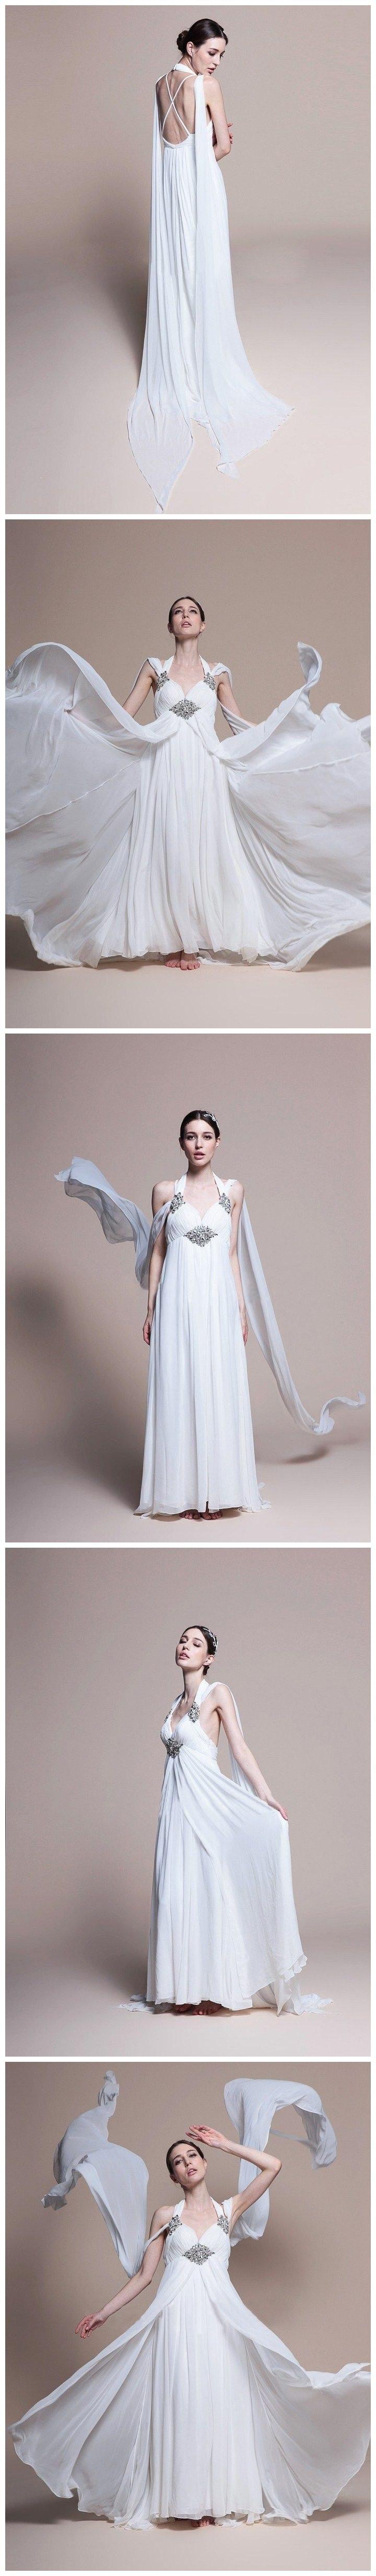 زفاف - dress